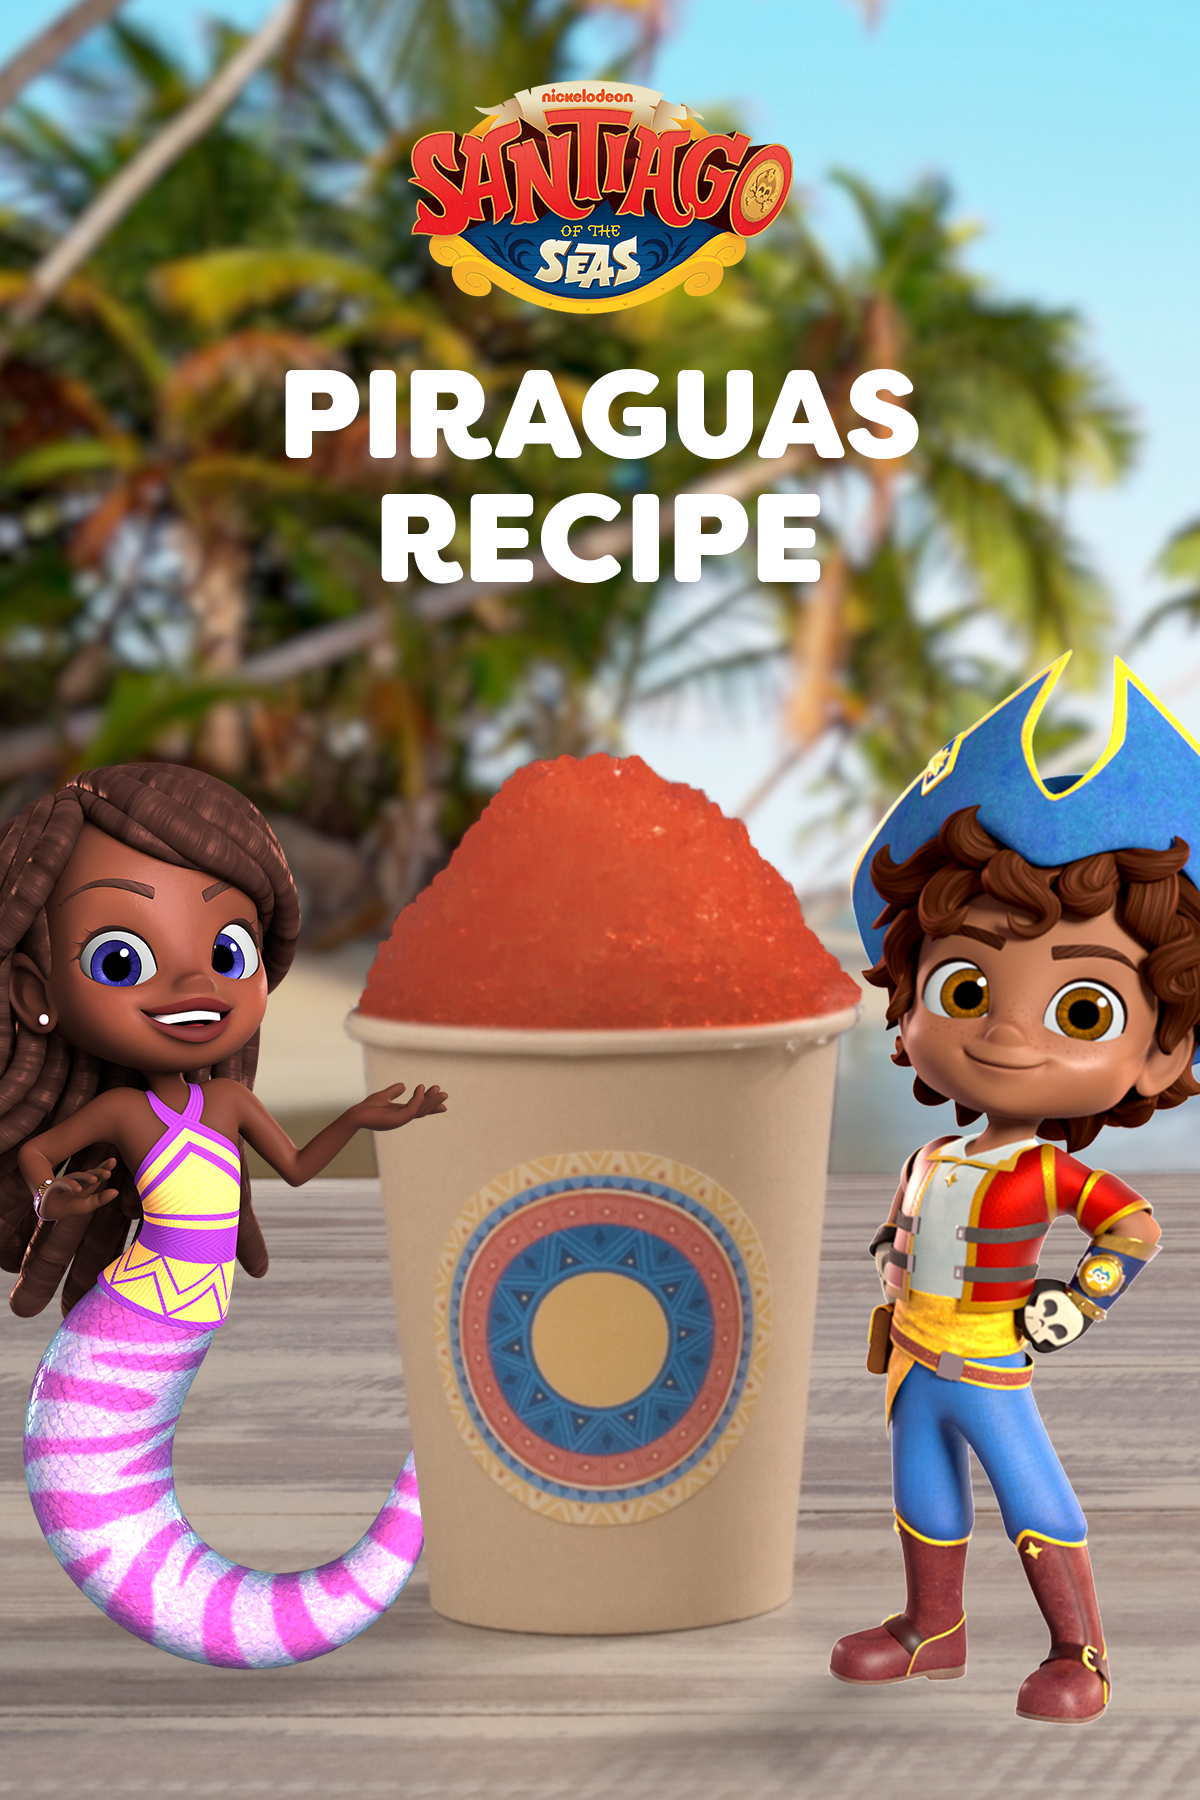 Santiago of the Seas Piraguas Recipe 2x3